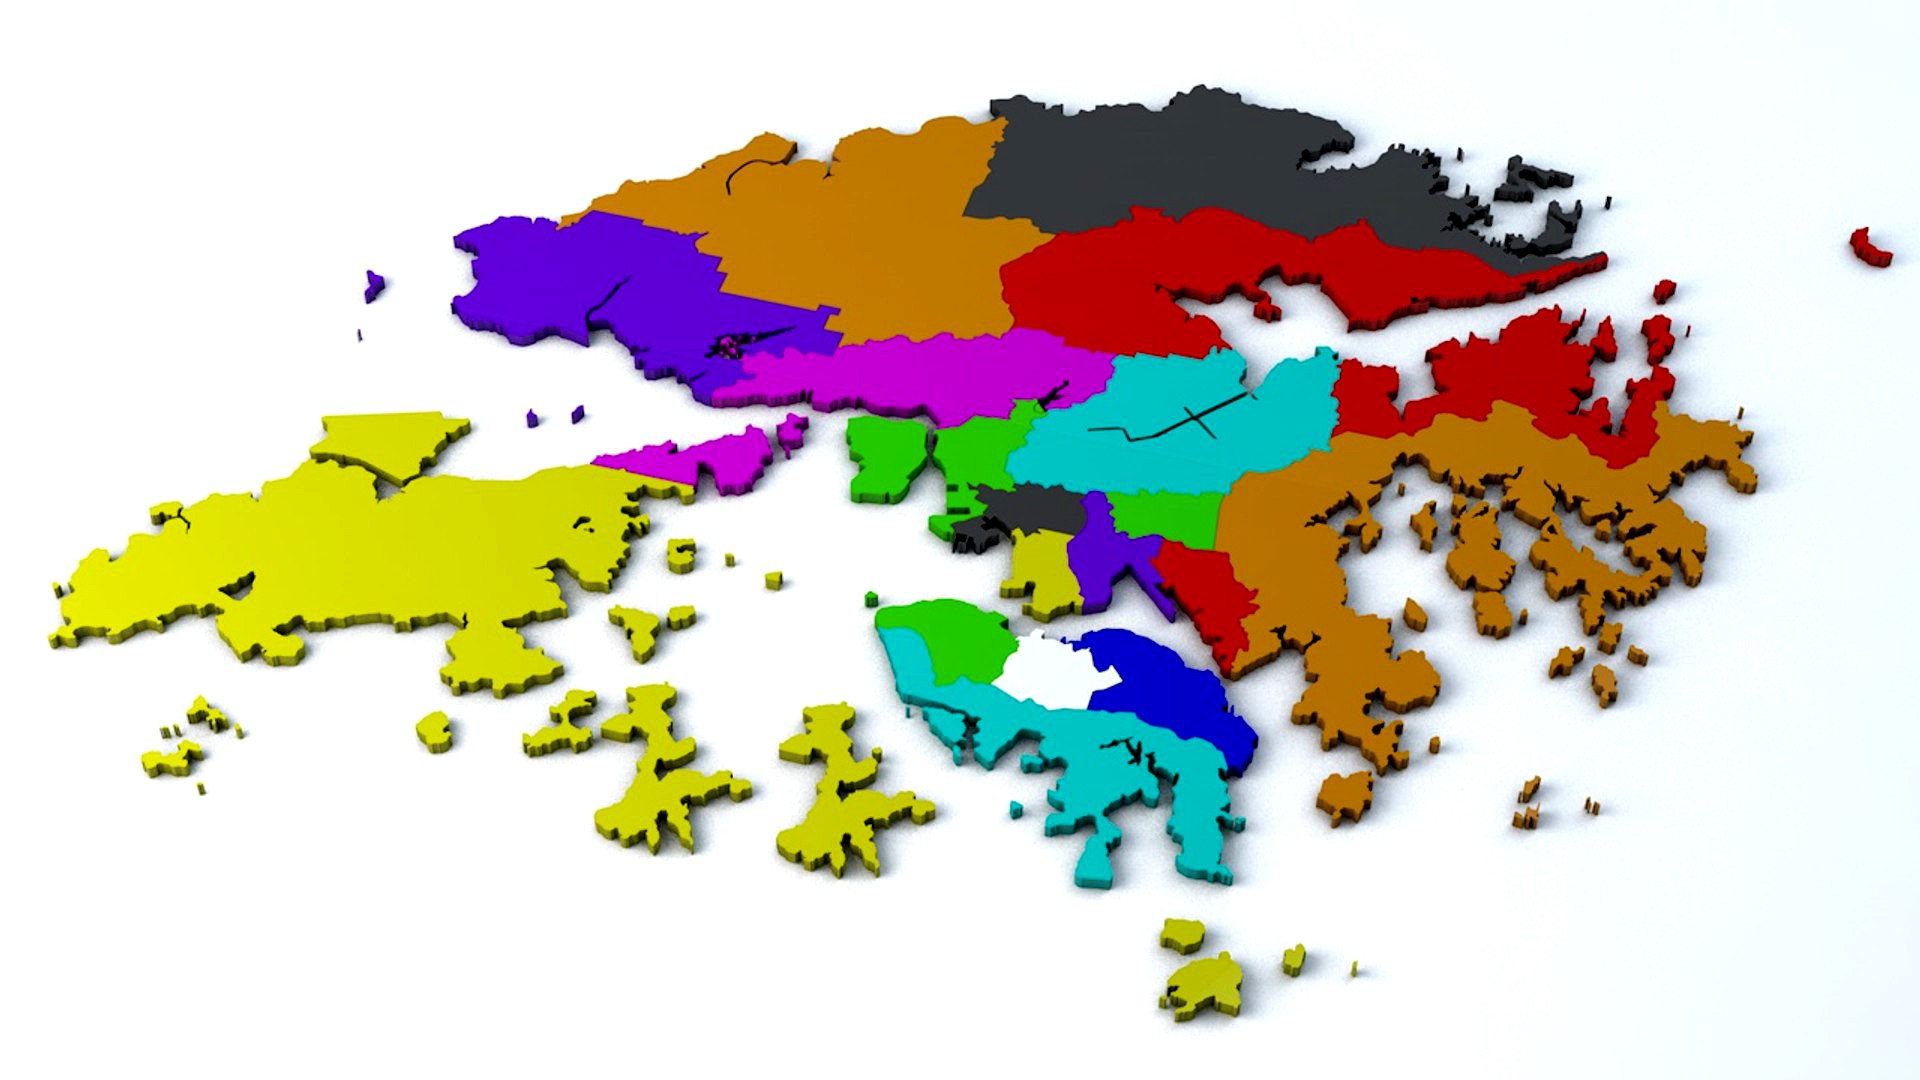 Hong Kong 18 Districts